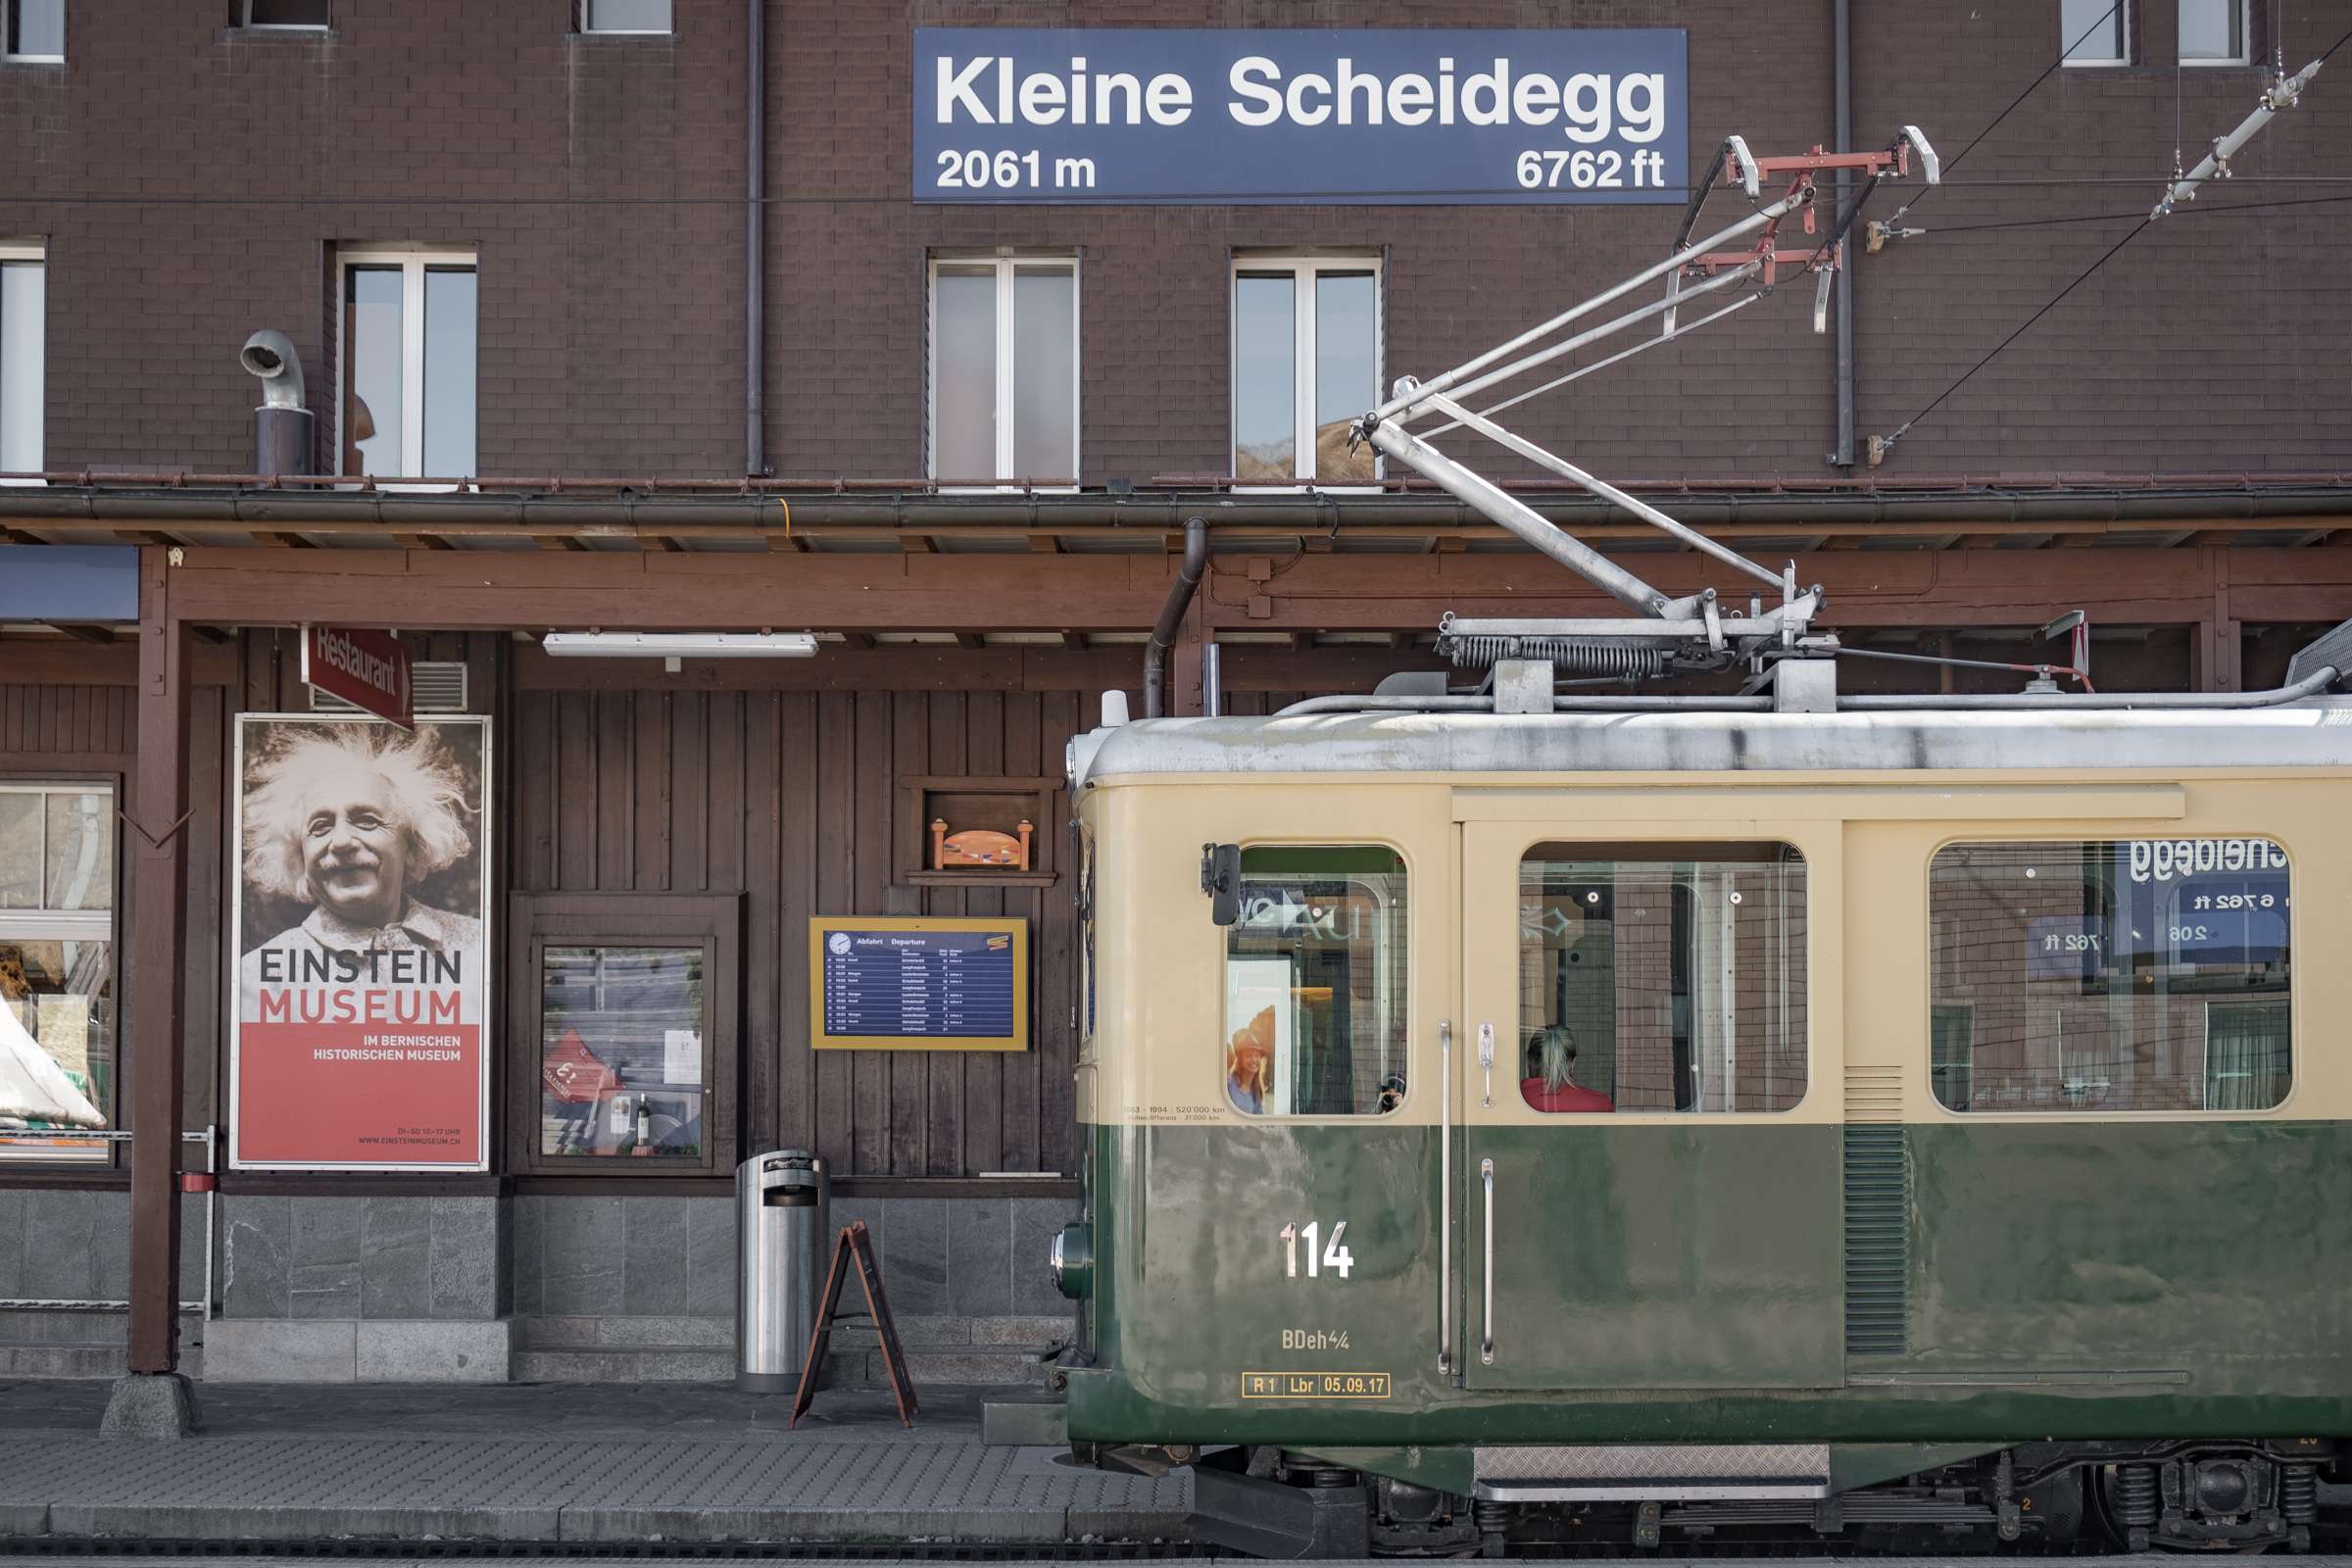 Kleine Scheidegg train station at 2061 metres high